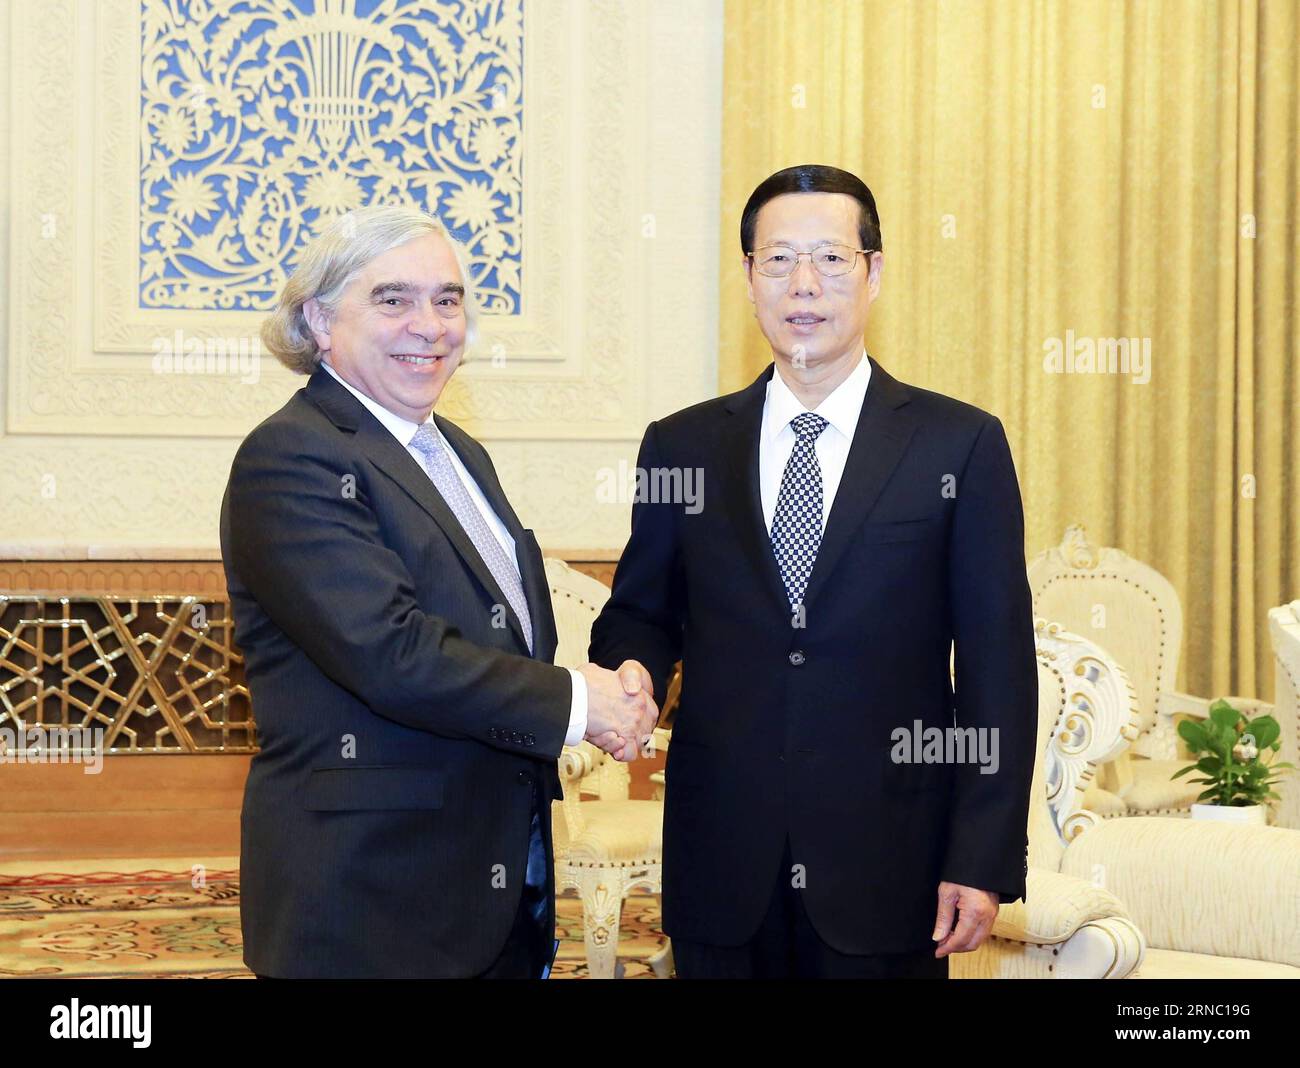 (160317) -- PÉKIN, le 17 mars 2016 -- le vice-premier ministre chinois Zhang Gaoli (R) rencontre le secrétaire américain à l'énergie Ernest Moniz à Pékin, capitale de la Chine, le 16 mars 2016.) (zkr) CHINA-BEIJING-ZHANG GAOLI-U.S.-ENERGY SECRETARY-MEETING(CN) DingxLin PUBLICATIONxNOTxINxCHN Beijing Mars 17 2016 le vice-premier ministre chinois Zhang Gaoli r rencontre le secrétaire de l'Energie Ernest Moniz à Beijing capitale chinoise Mars 16 2016 CCR Chine Beijing Zhang Gaoli Réunion du secrétaire de l'Energie CN DingxLin PUBLICATIONxNOTxINxINxINXCHN Banque D'Images